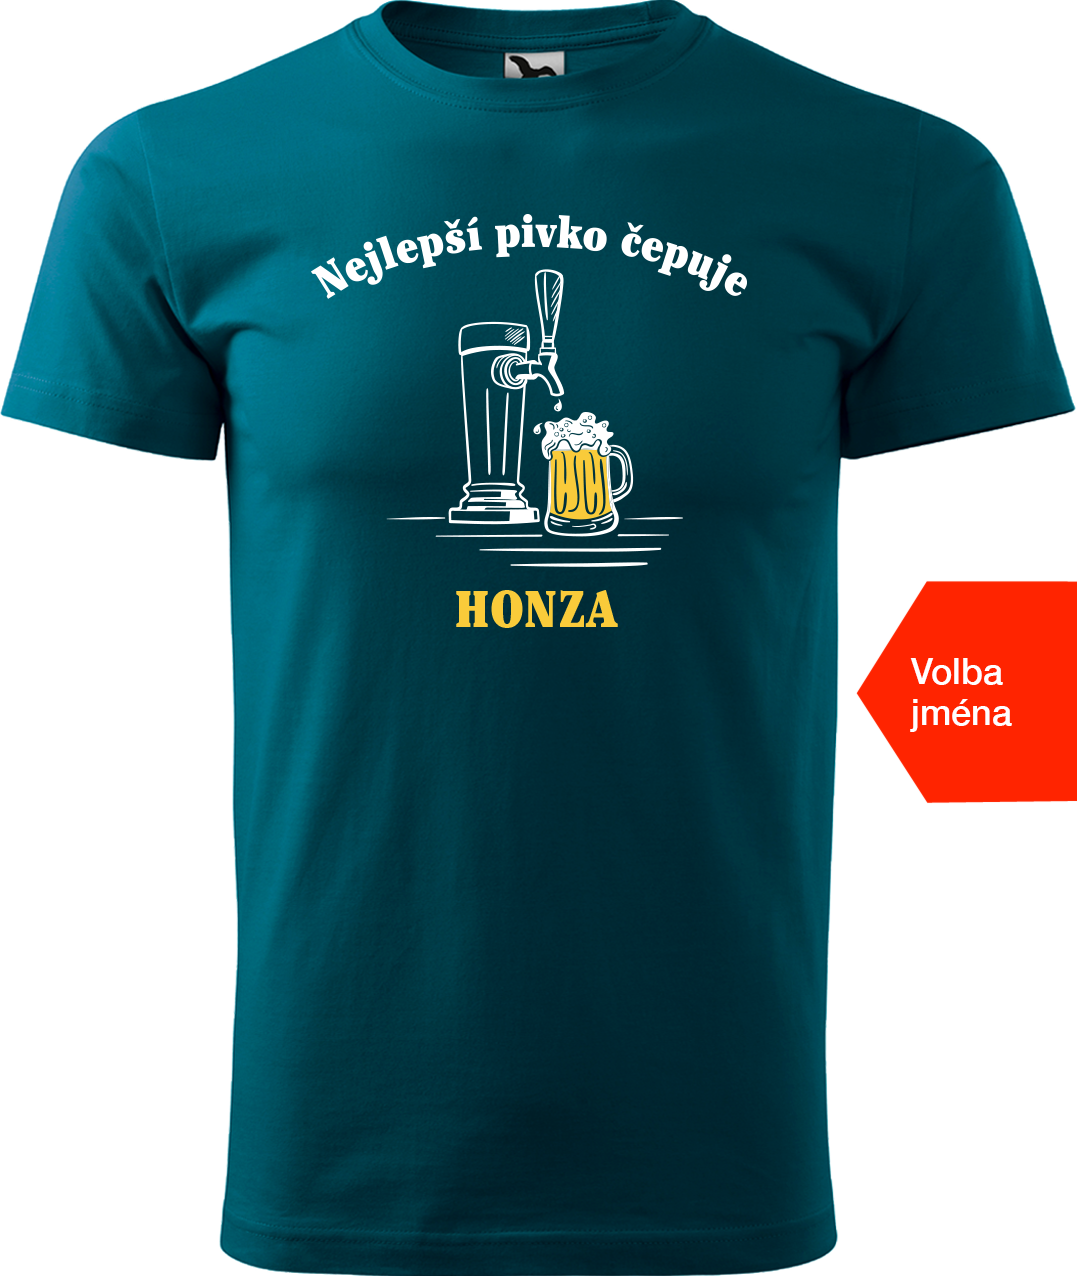 Pivní tričko - Nejlepší pivko čepuje + jméno Velikost: M, Barva: Petrolejová (93)